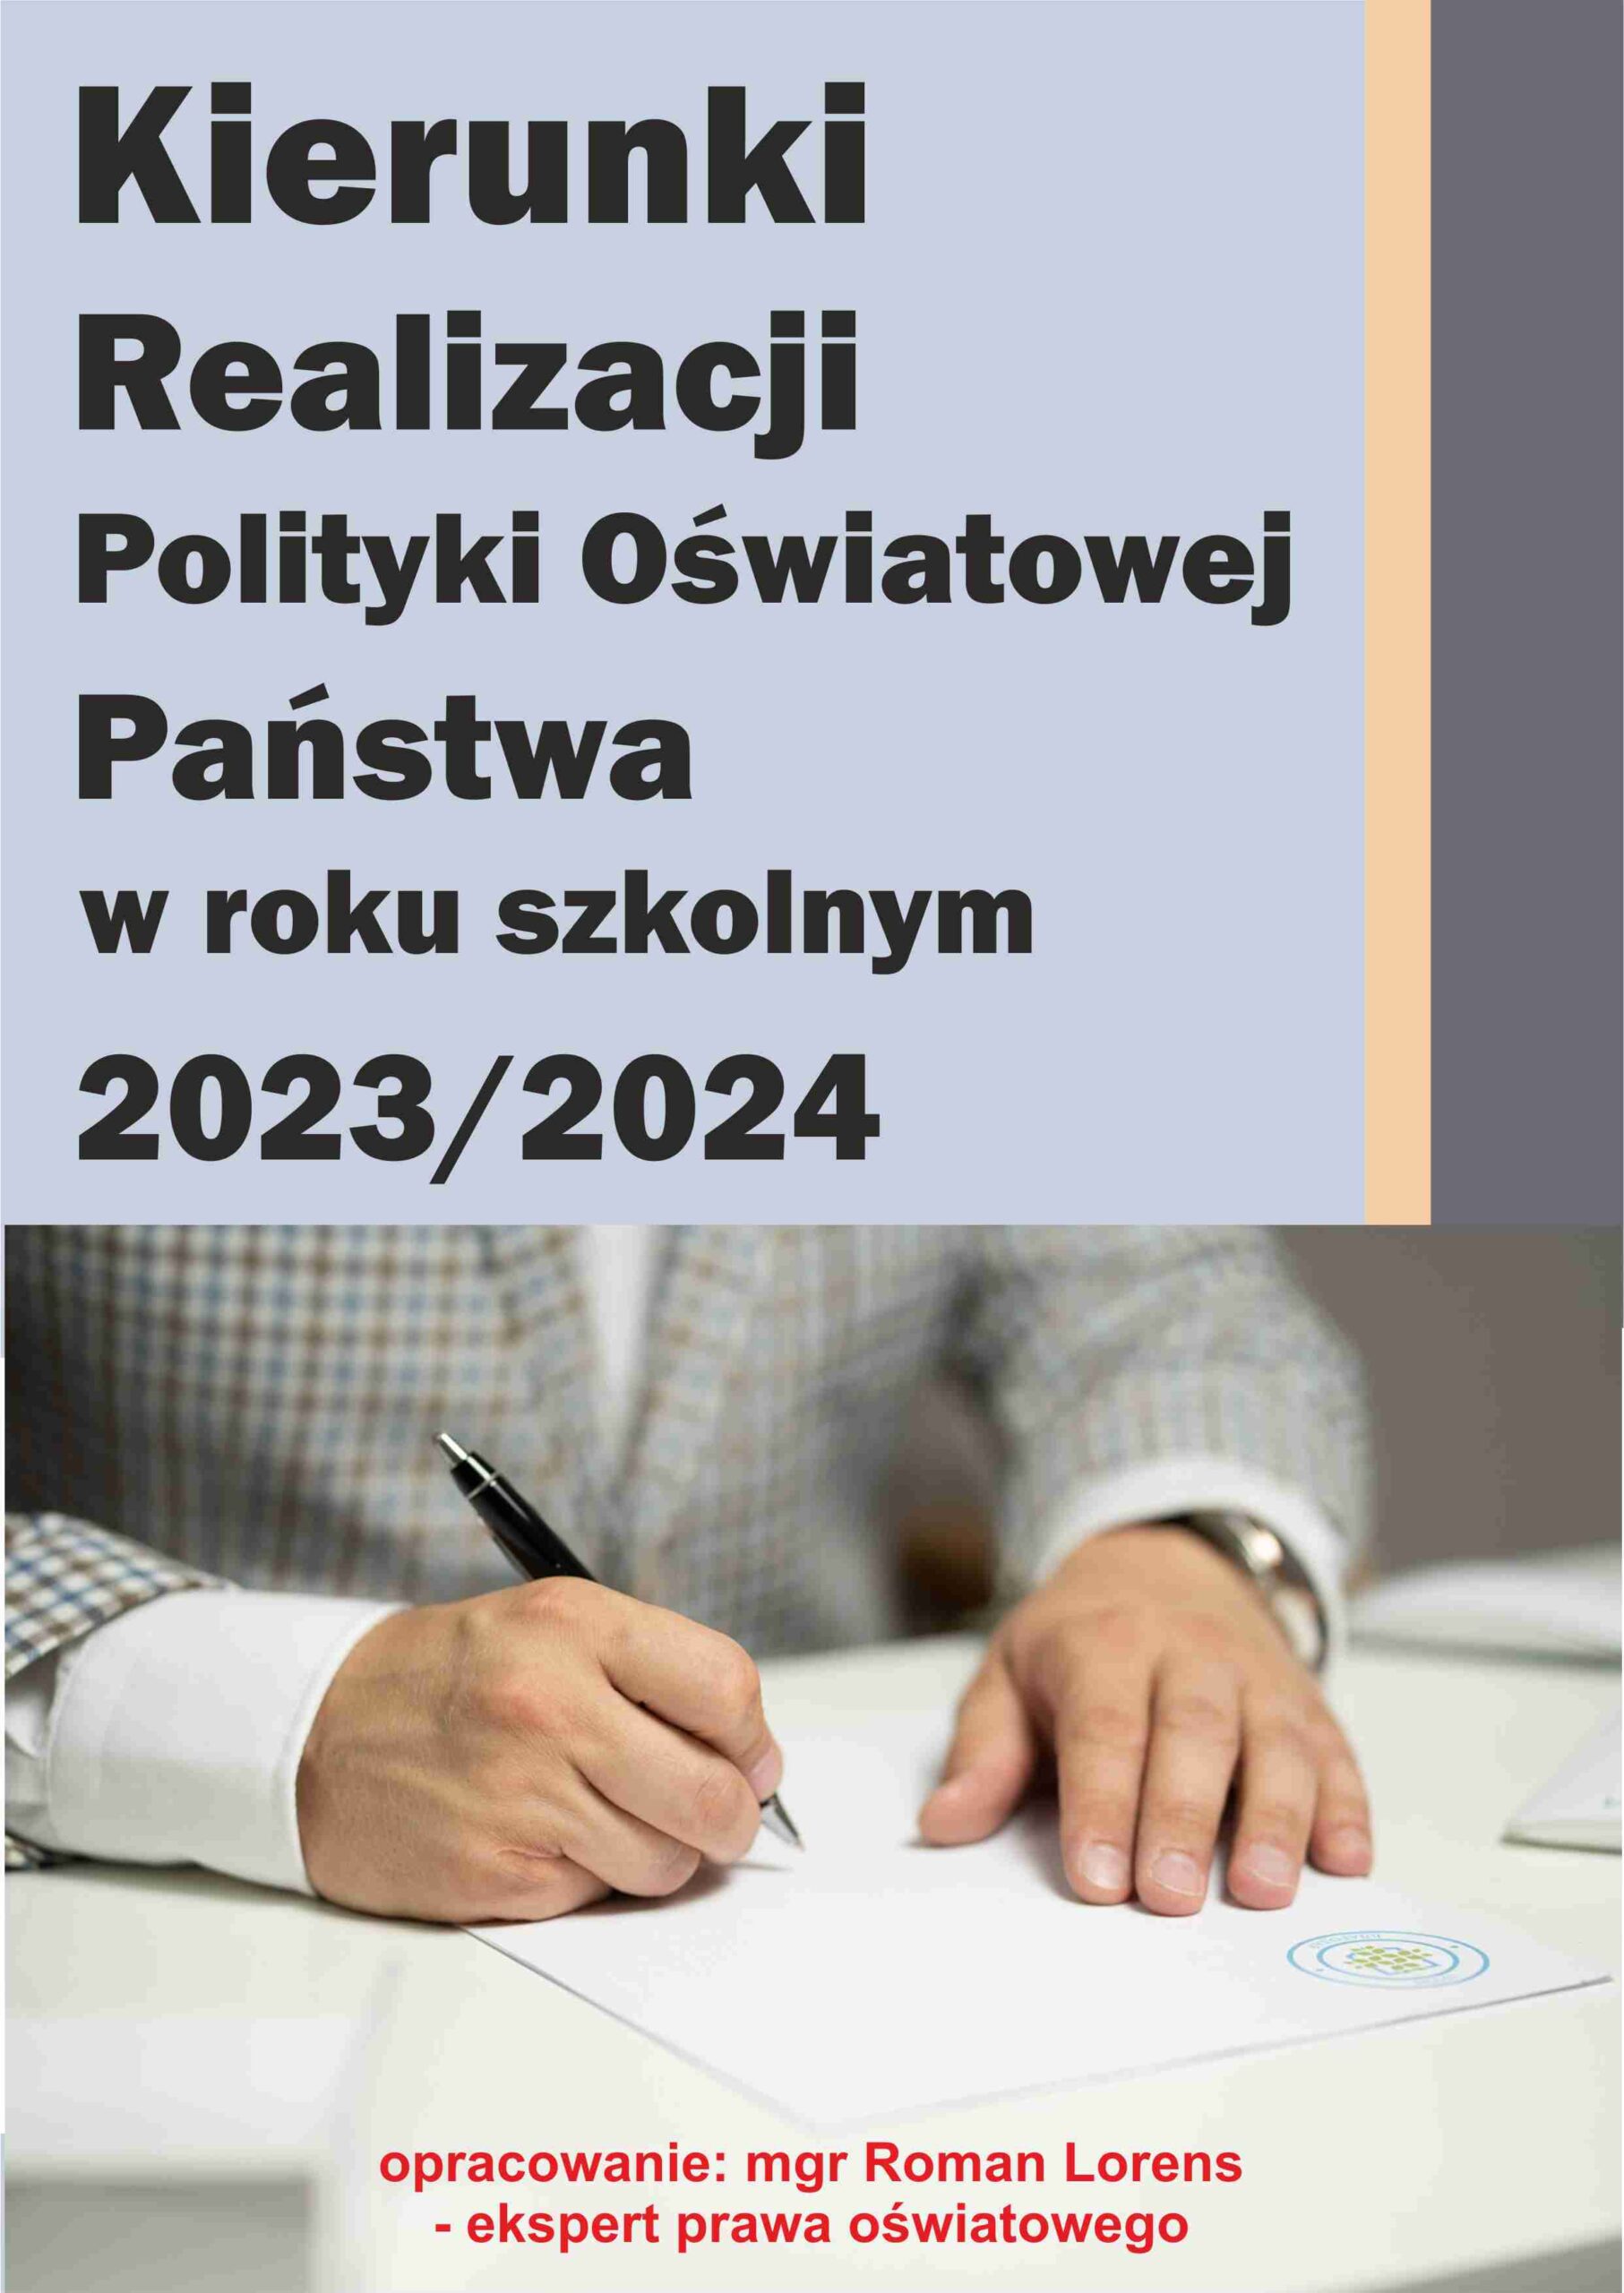 Kierunki realizacji polityki oświatowej państwa w roku szkolnym 2023/2024